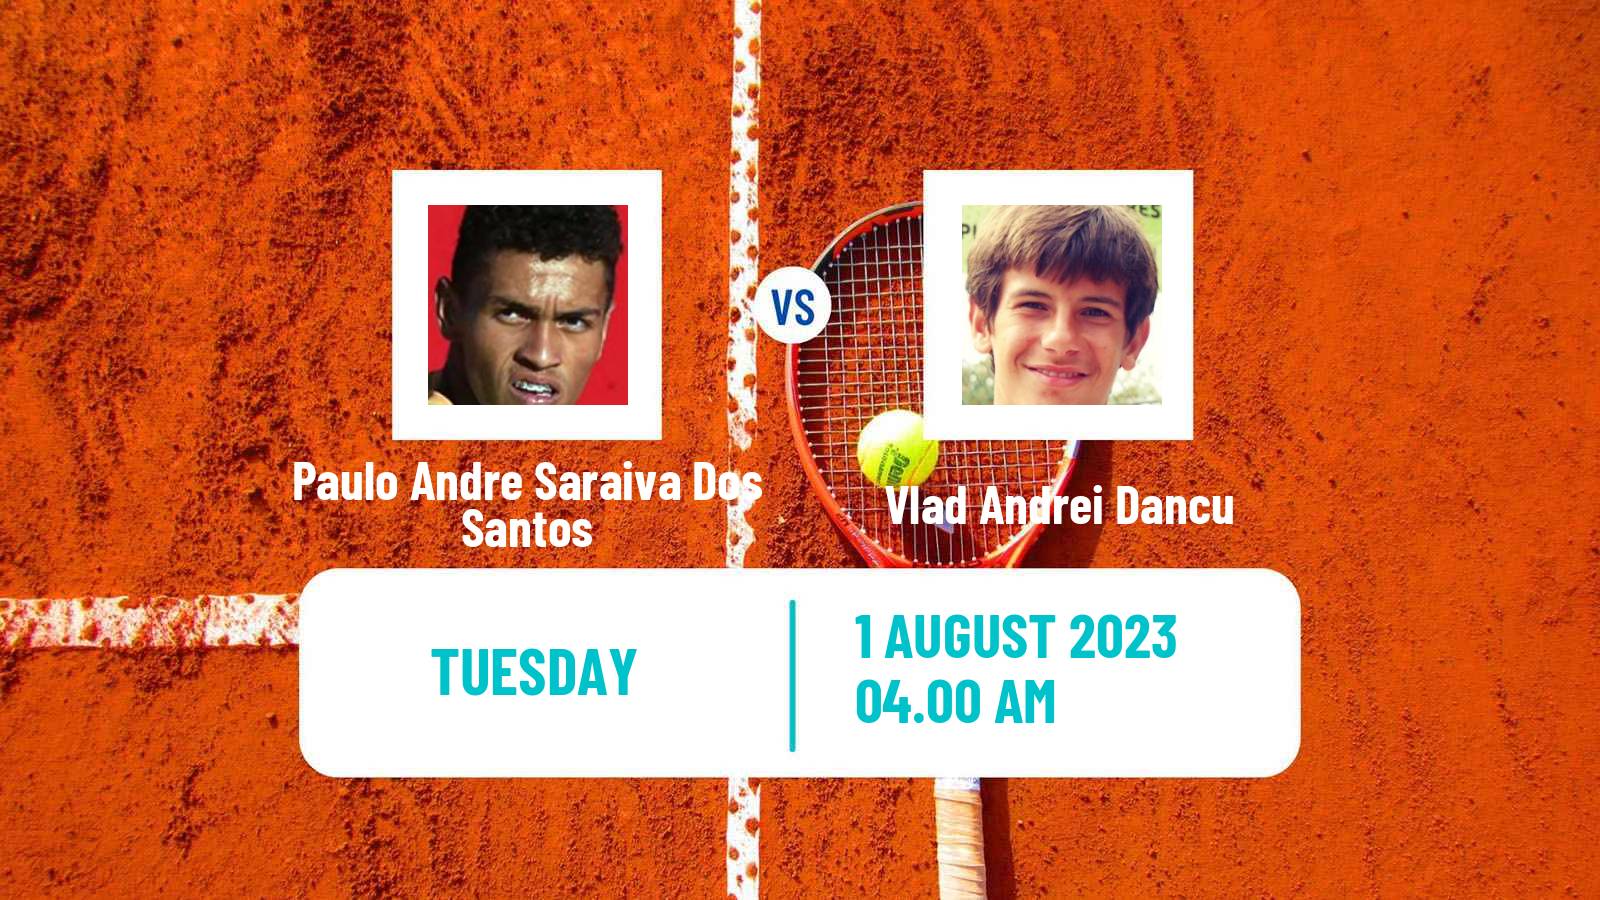 Tennis ITF M25 Pitesti Men 2023 Paulo Andre Saraiva Dos Santos - Vlad Andrei Dancu